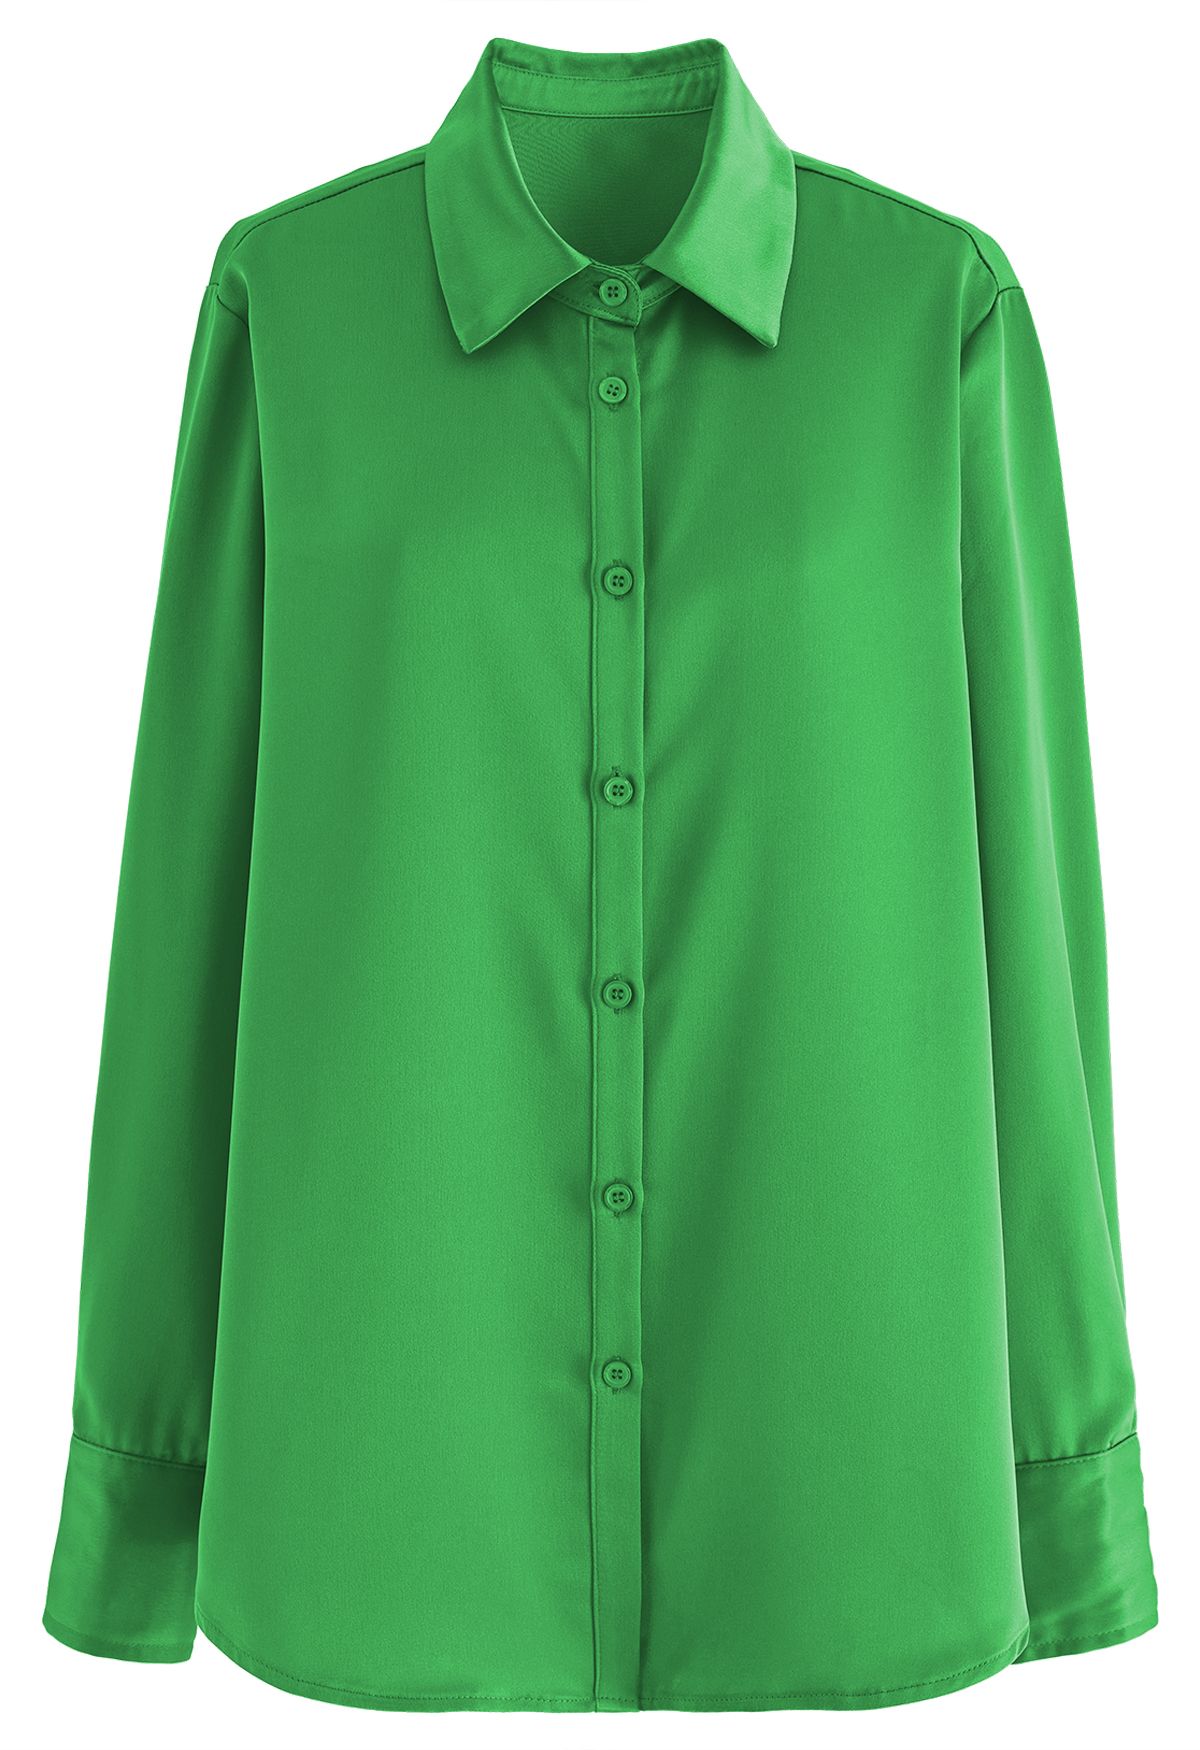 Chemise boutonnée au fini satiné en vert